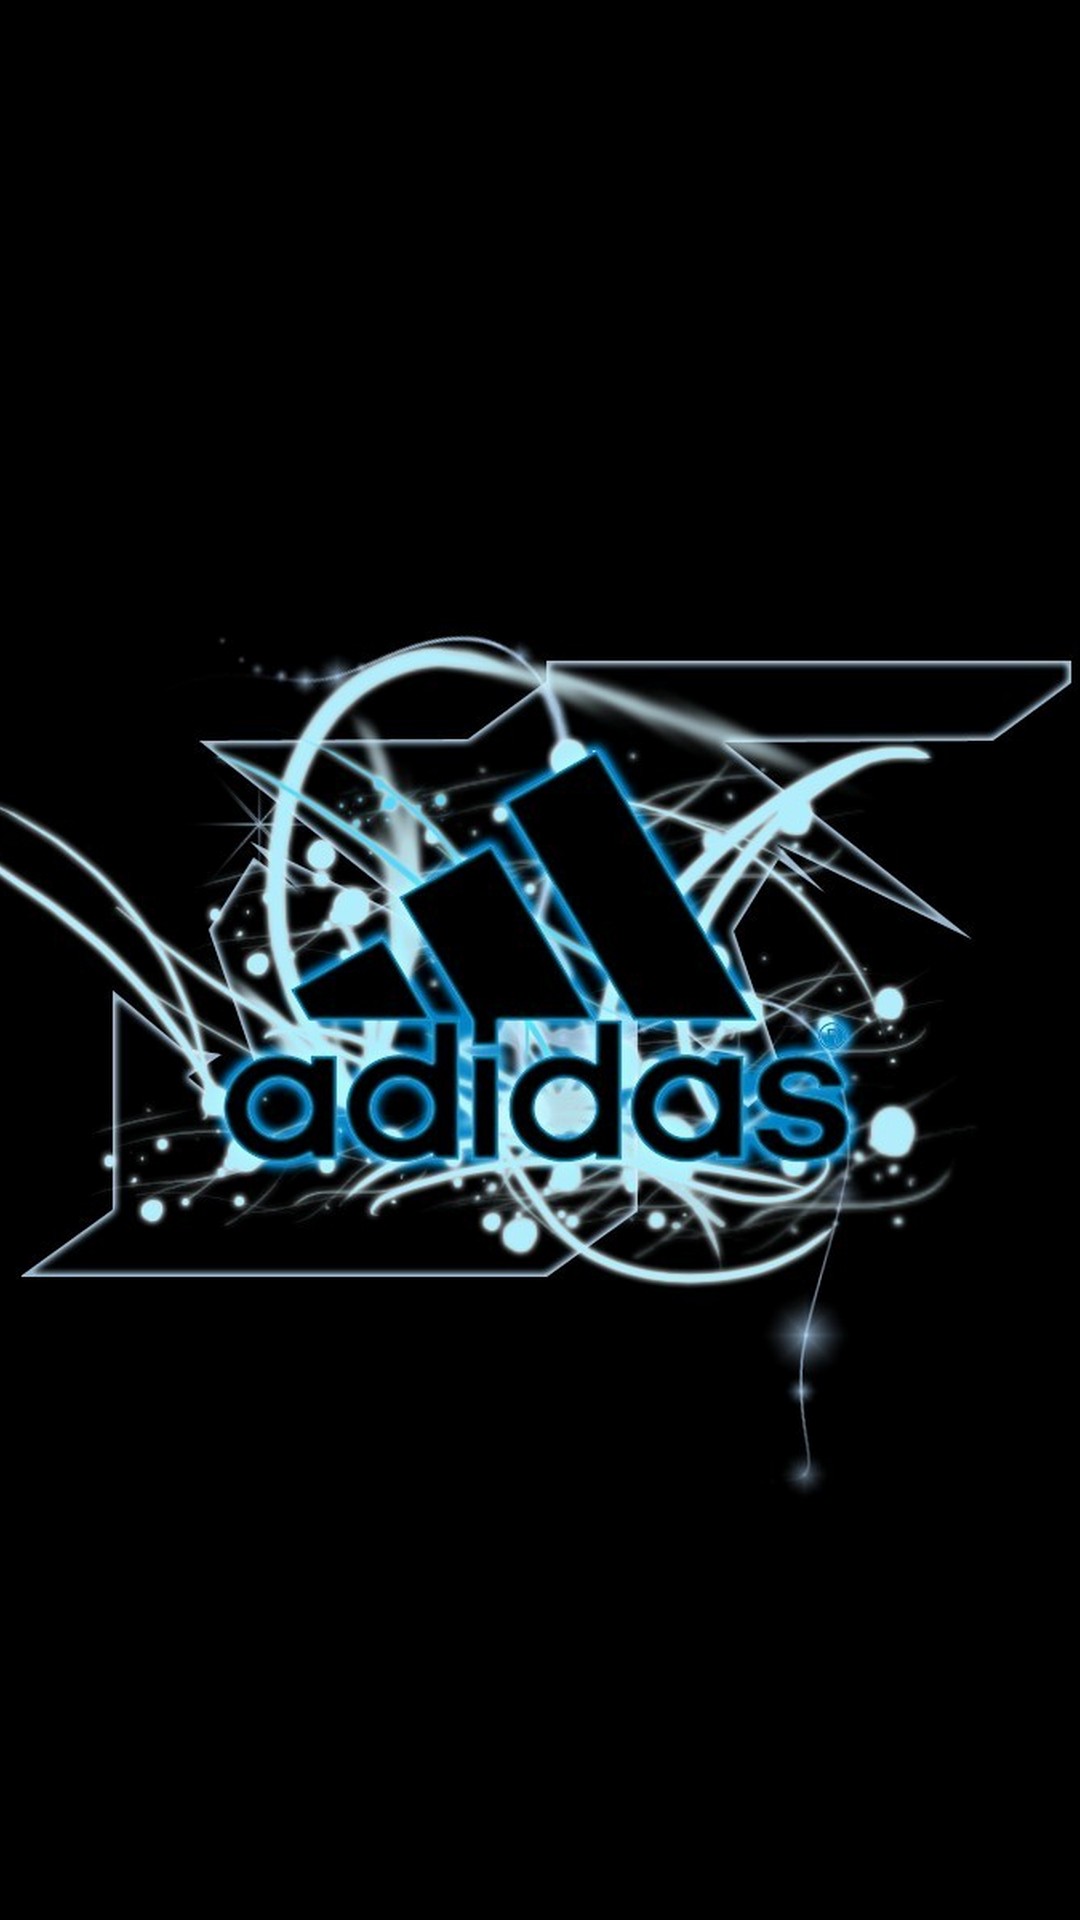 1080x1920 Обои Adidas: 85 лучших загрузок HD обоев Adidas (2020) 